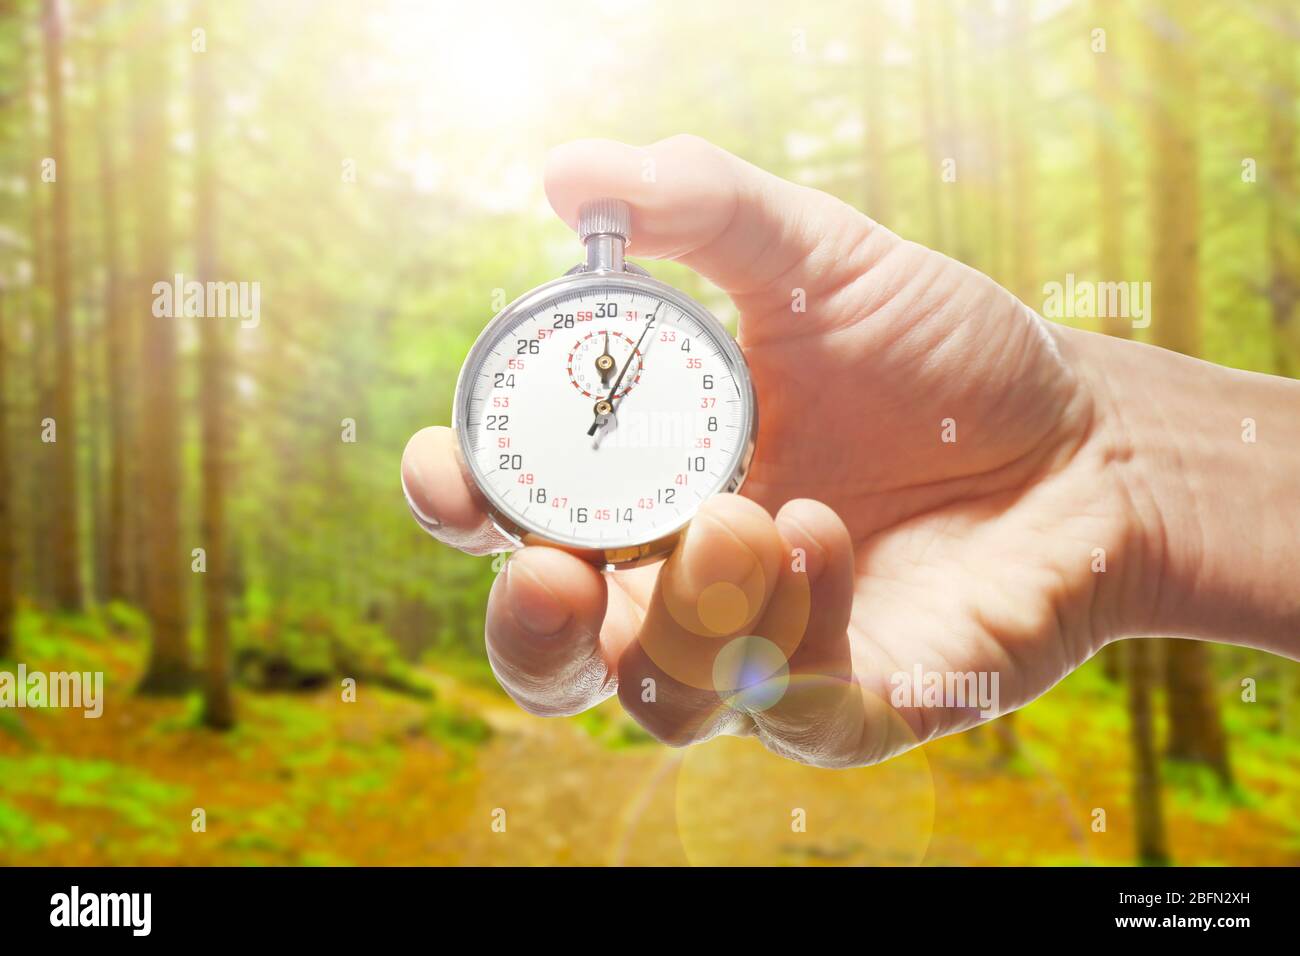 Uomo che tiene cronometro contro la foresta background.Time concetto Foto Stock